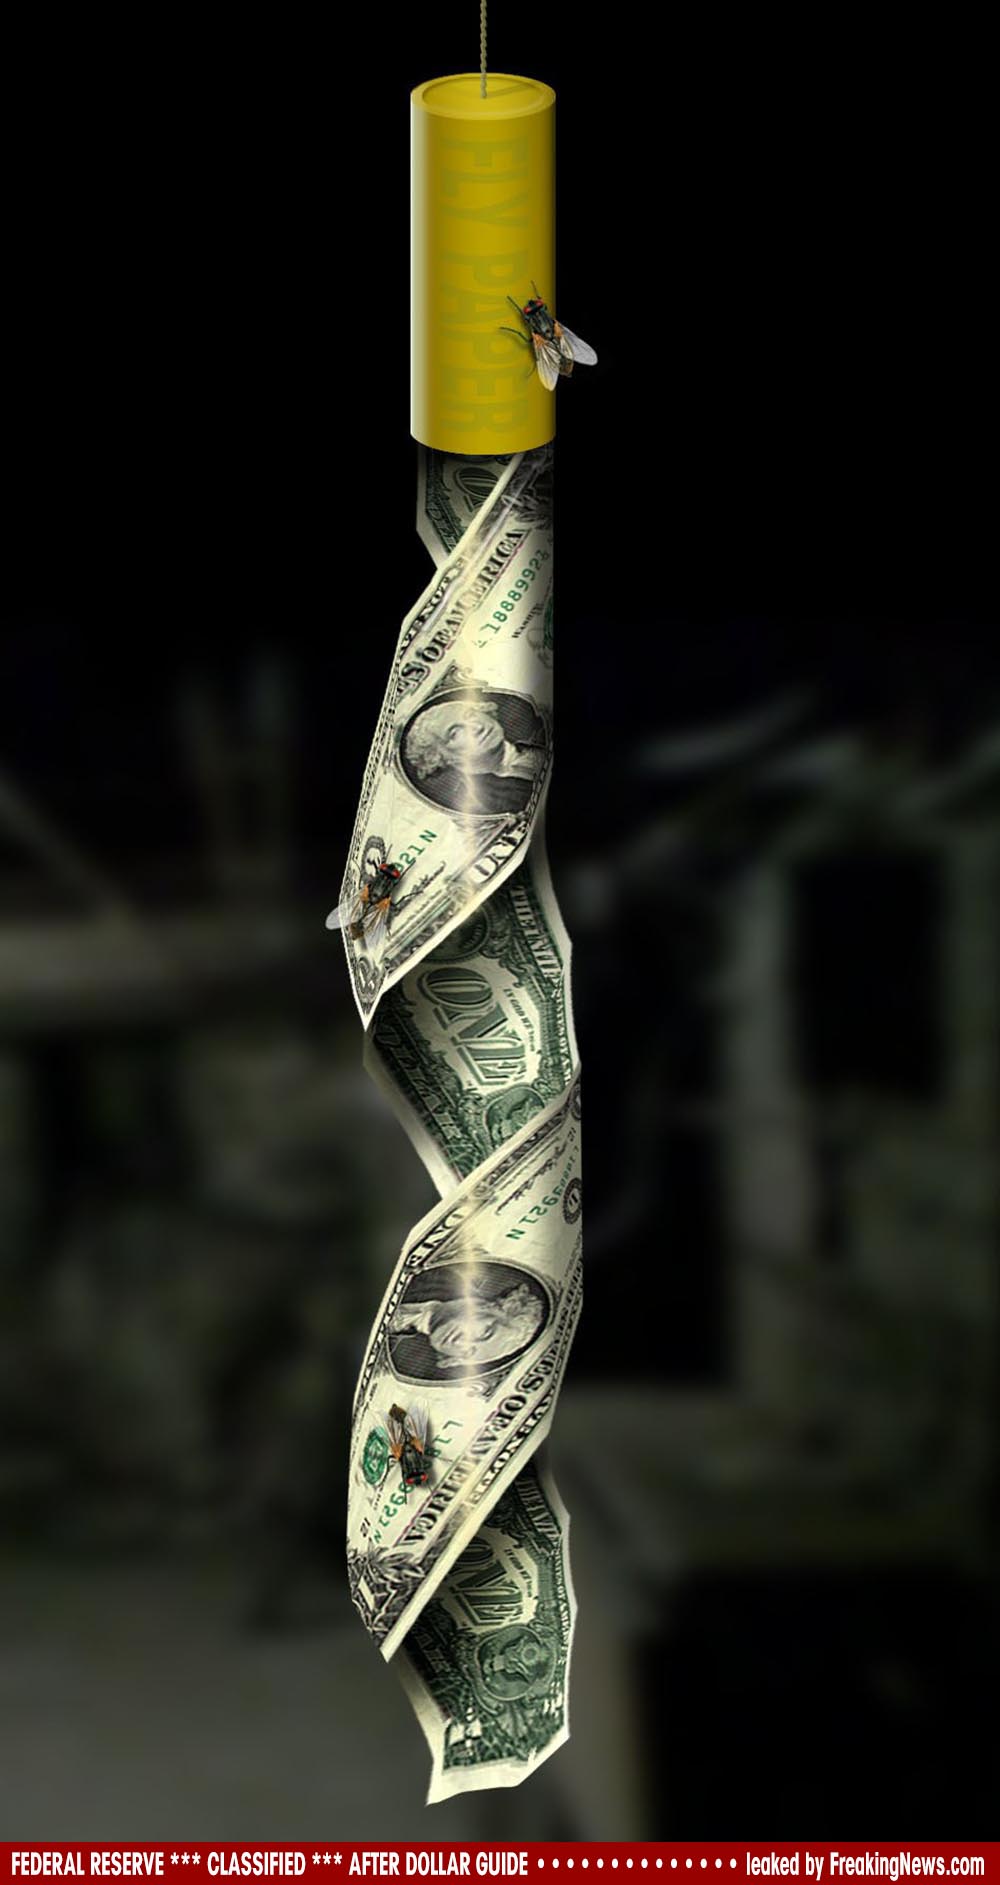 Dollar-Fly-Trap-Fliegenfalle-dreck-geld-klebt-stinkt